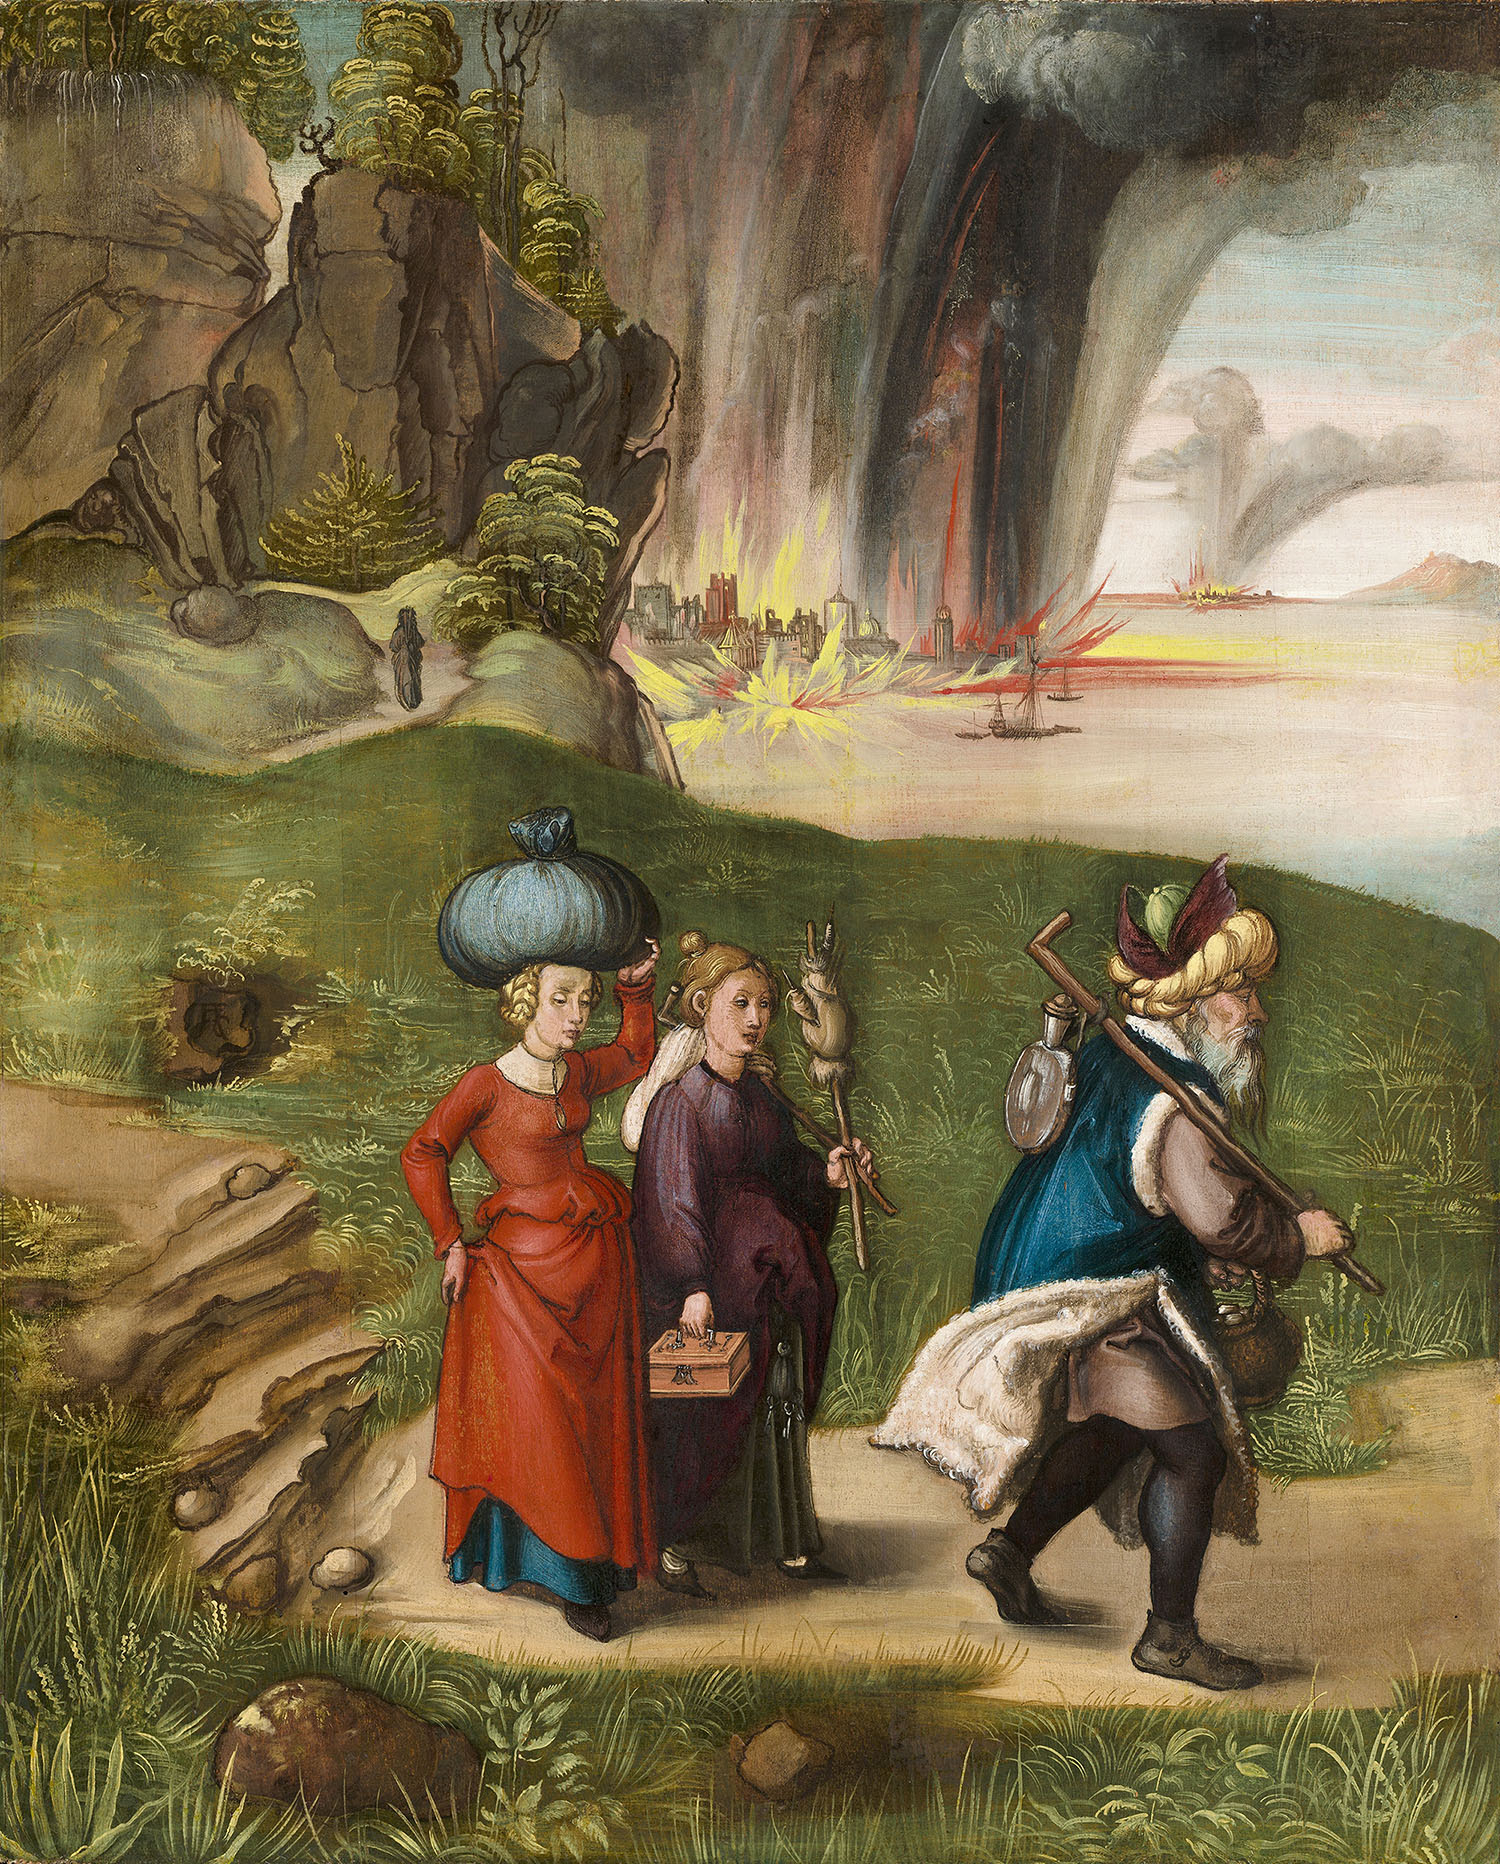 Альбрехт Дюрер. "Бегство Лота с дочерьми из Содома". 1496-1499. Национальная галерея искусств, Вашингтон.